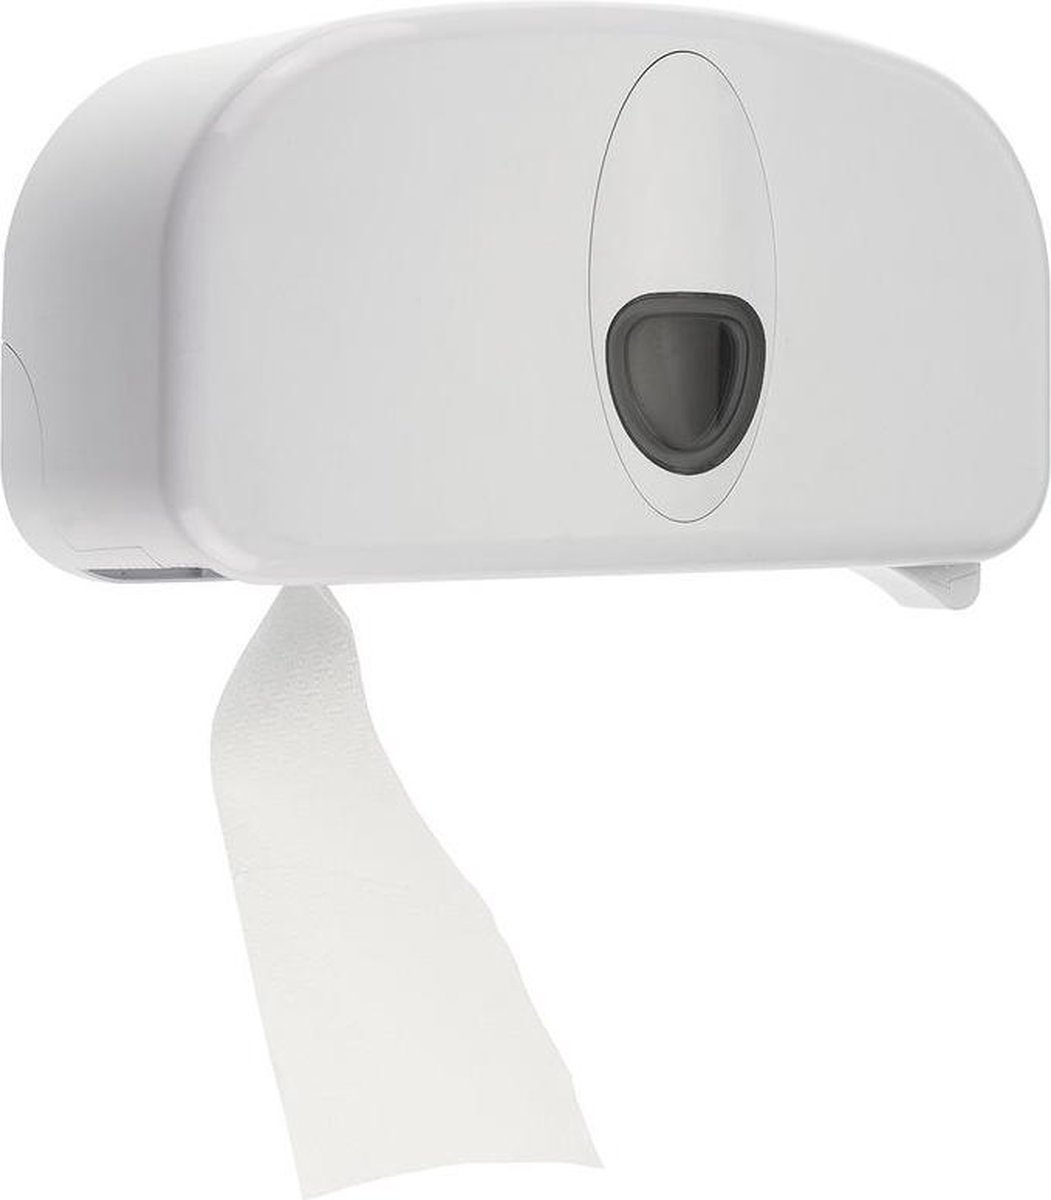 PlastiQline 2020 toiletpapier dispenser gemaakt van plastic voor 2 systeemrollen